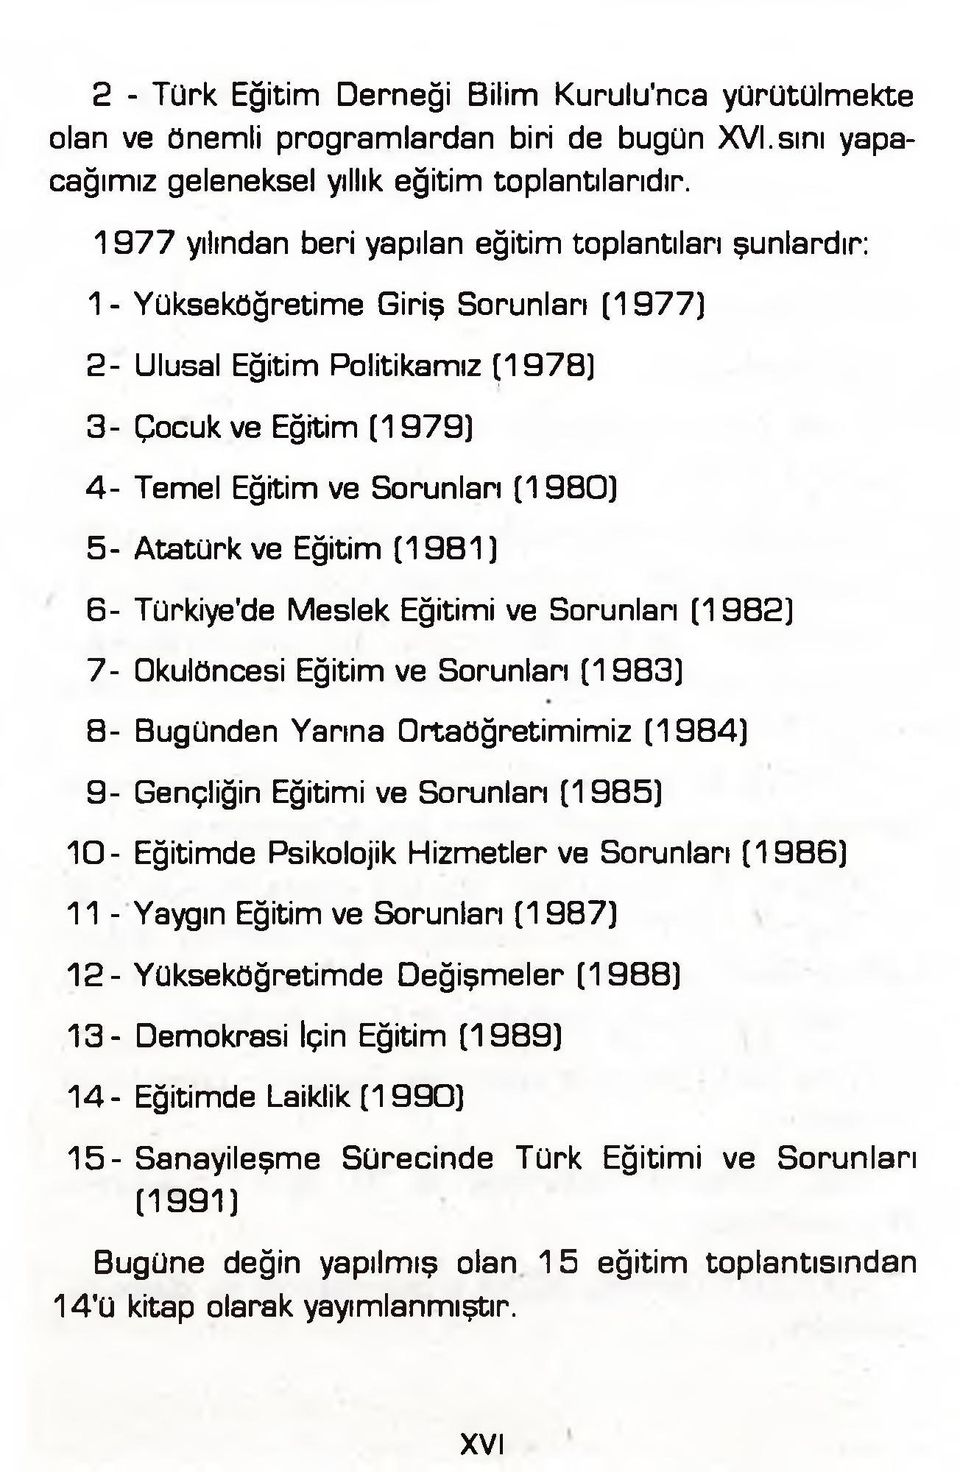 5- Atatürk ve Eğitim (1981) 6- Türkiye'de Meslek Eğitimi ve Sorunları (1982) 7- Okulöncesi Eğitim ve Sorunları (1983) 8- Bugünden Yarına Ortaöğretimimiz (1984) 9- Gençliğin Eğitimi ve Sorunları